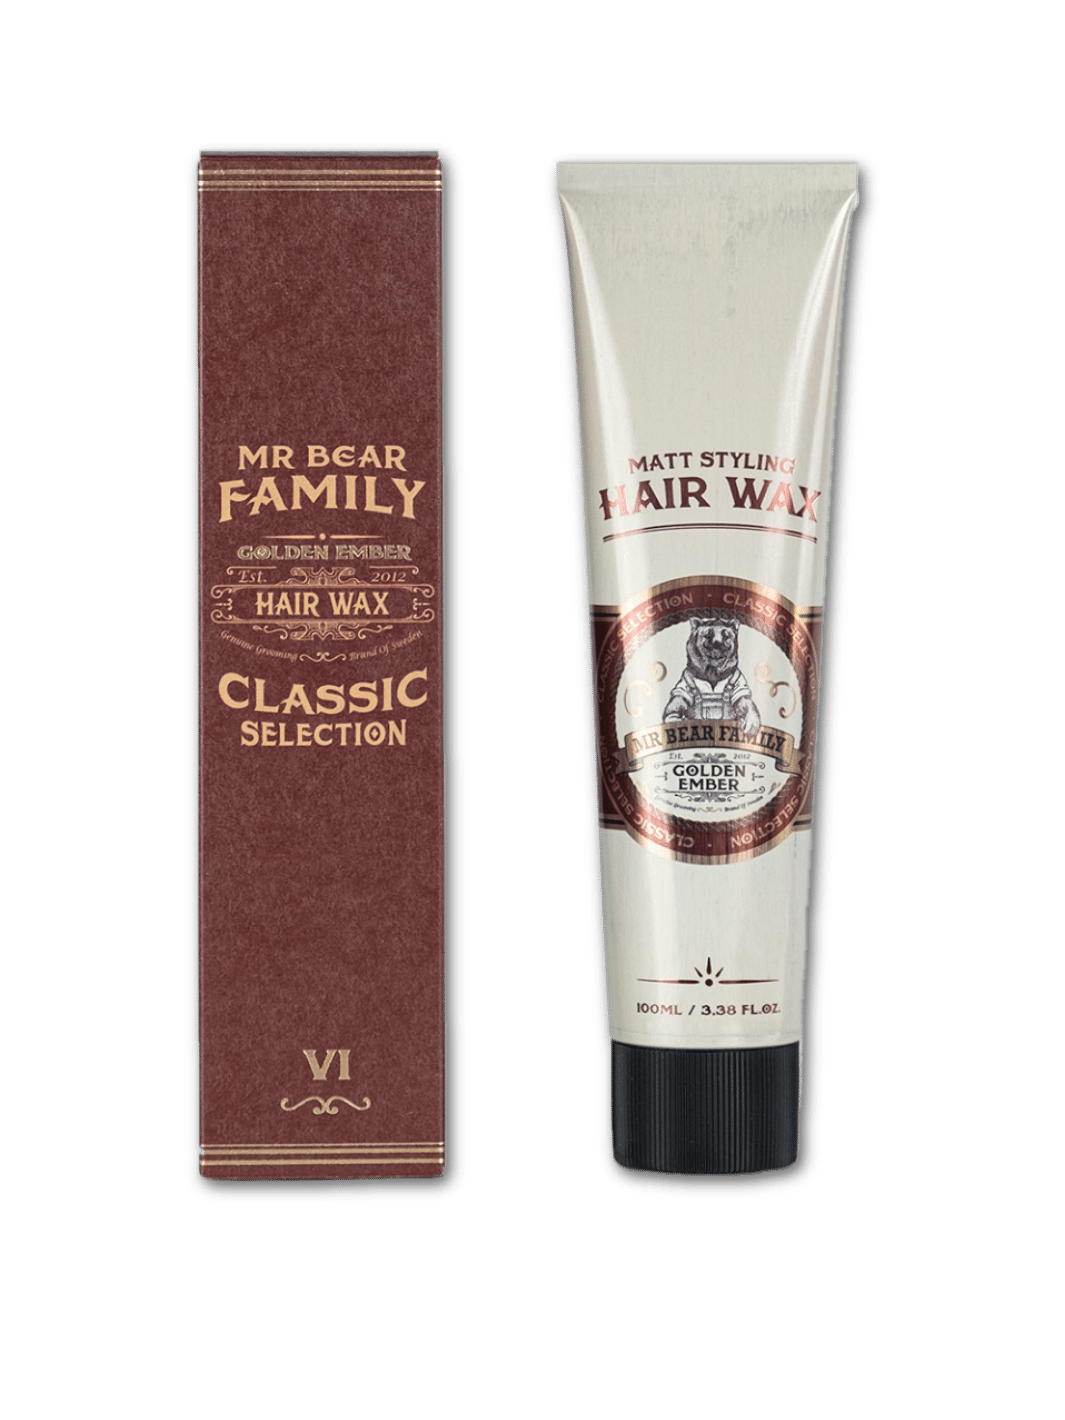 Mr. Bear Family Hair Wax Golden Ember, 100ml Dose, starkes Haarwachs für langanhaltenden Halt und natürlichen Glanz, in einer eleganten schwarzen Dose mit goldenem Deckel, verfügbar bei Phullcutz.